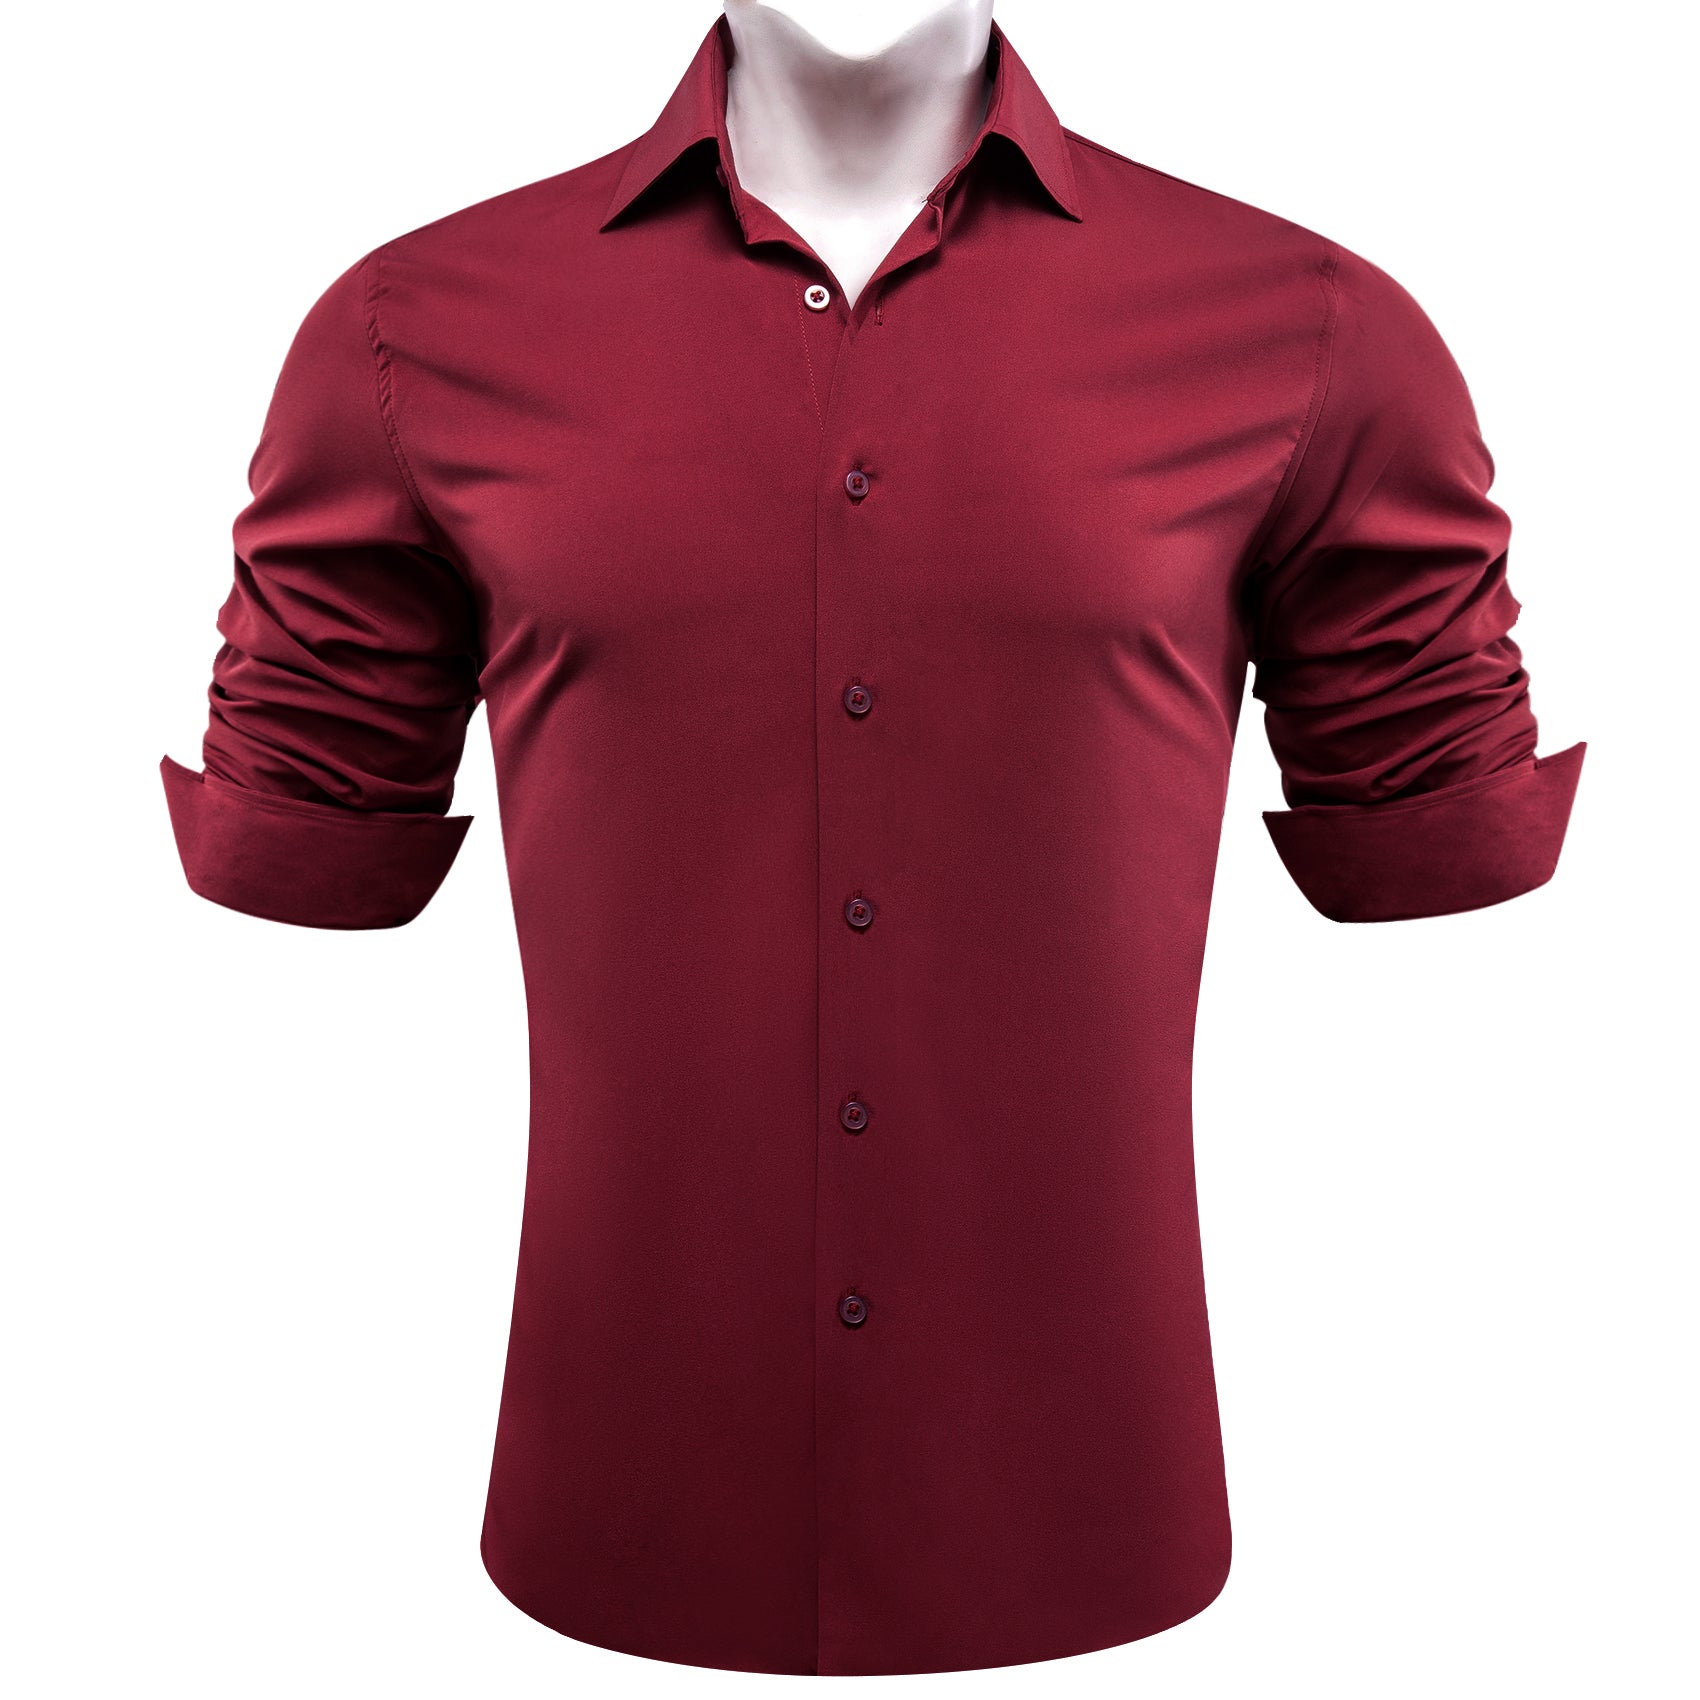 Barry.wang Dark Red Solid Silk Shirt